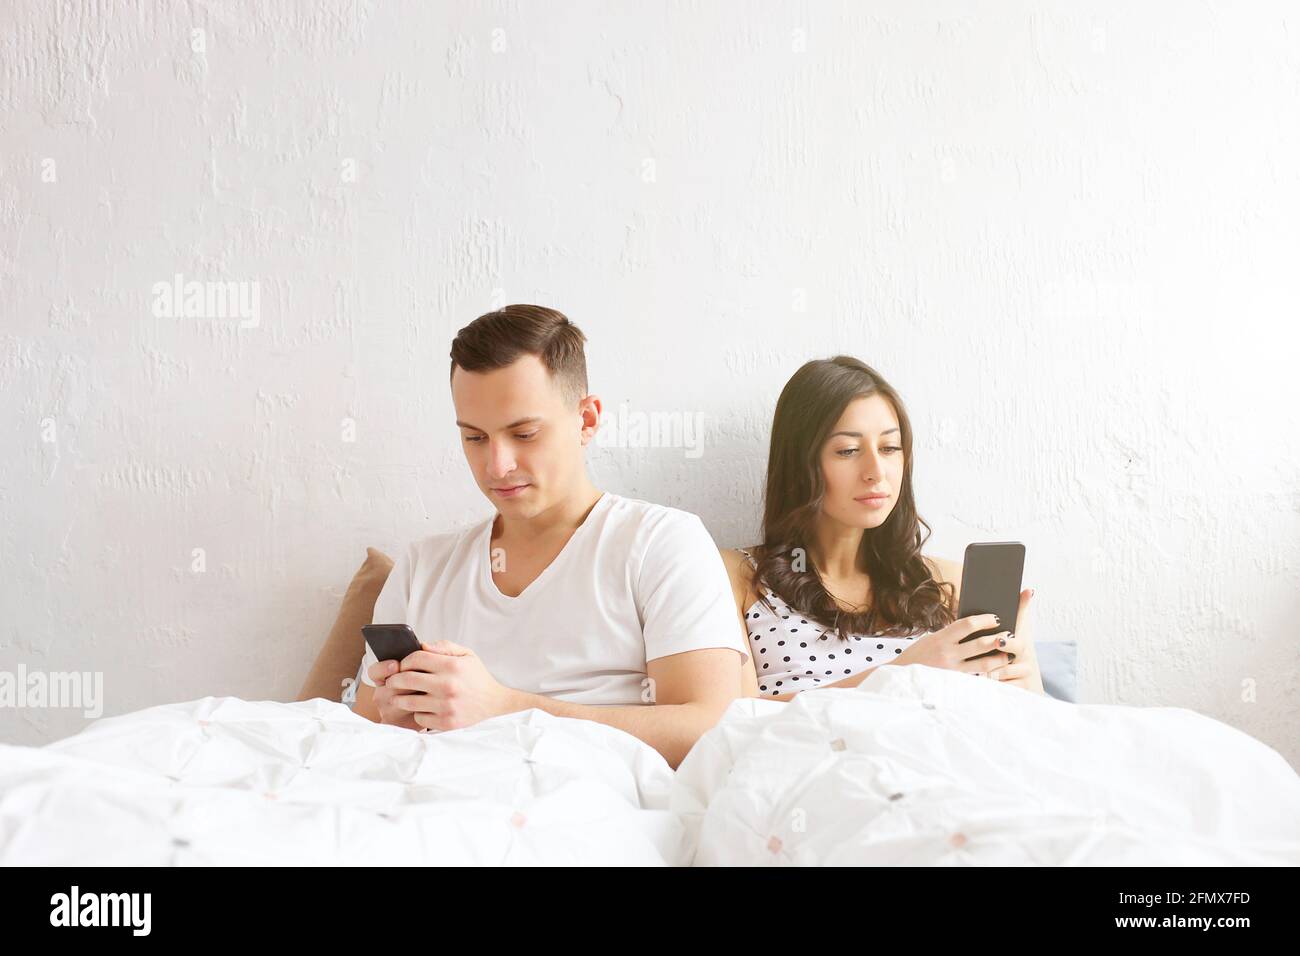 Junge amerikanische Männer und Frauen, die auf das Mobiltelefon starren. Modell für Männer und Frauen im Bett mit mobilem Gerät. Nomofobia-Konzept. Smartphone-Zombi Stockfoto